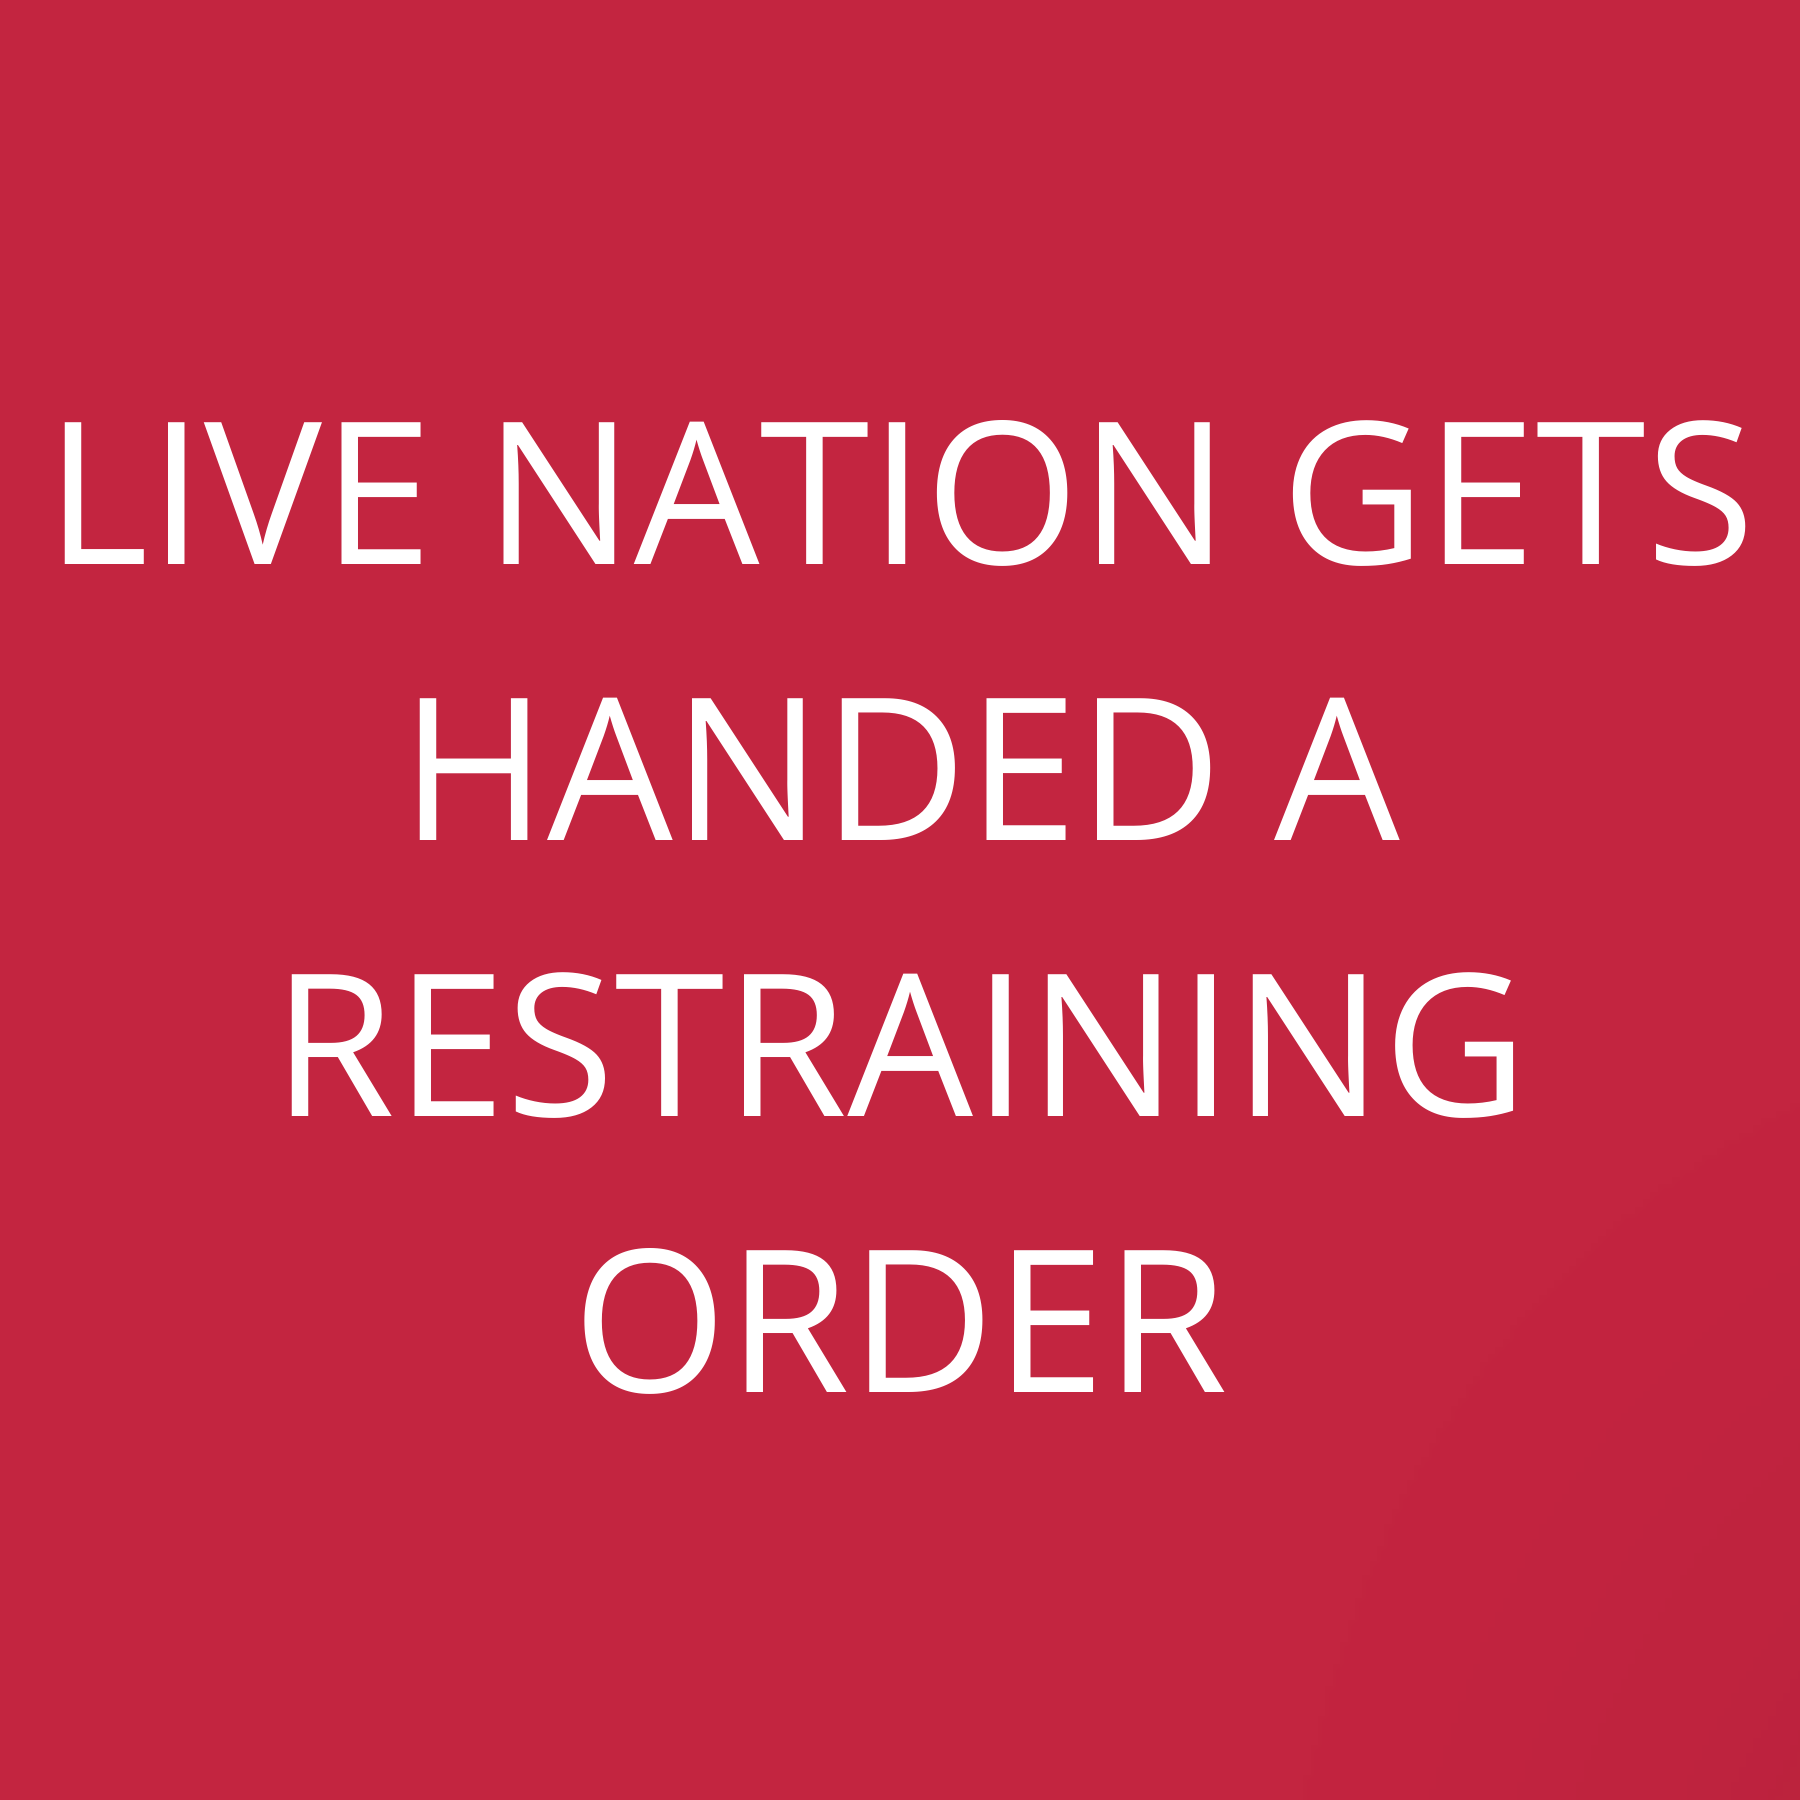 Live Nation gets handed a restraining order